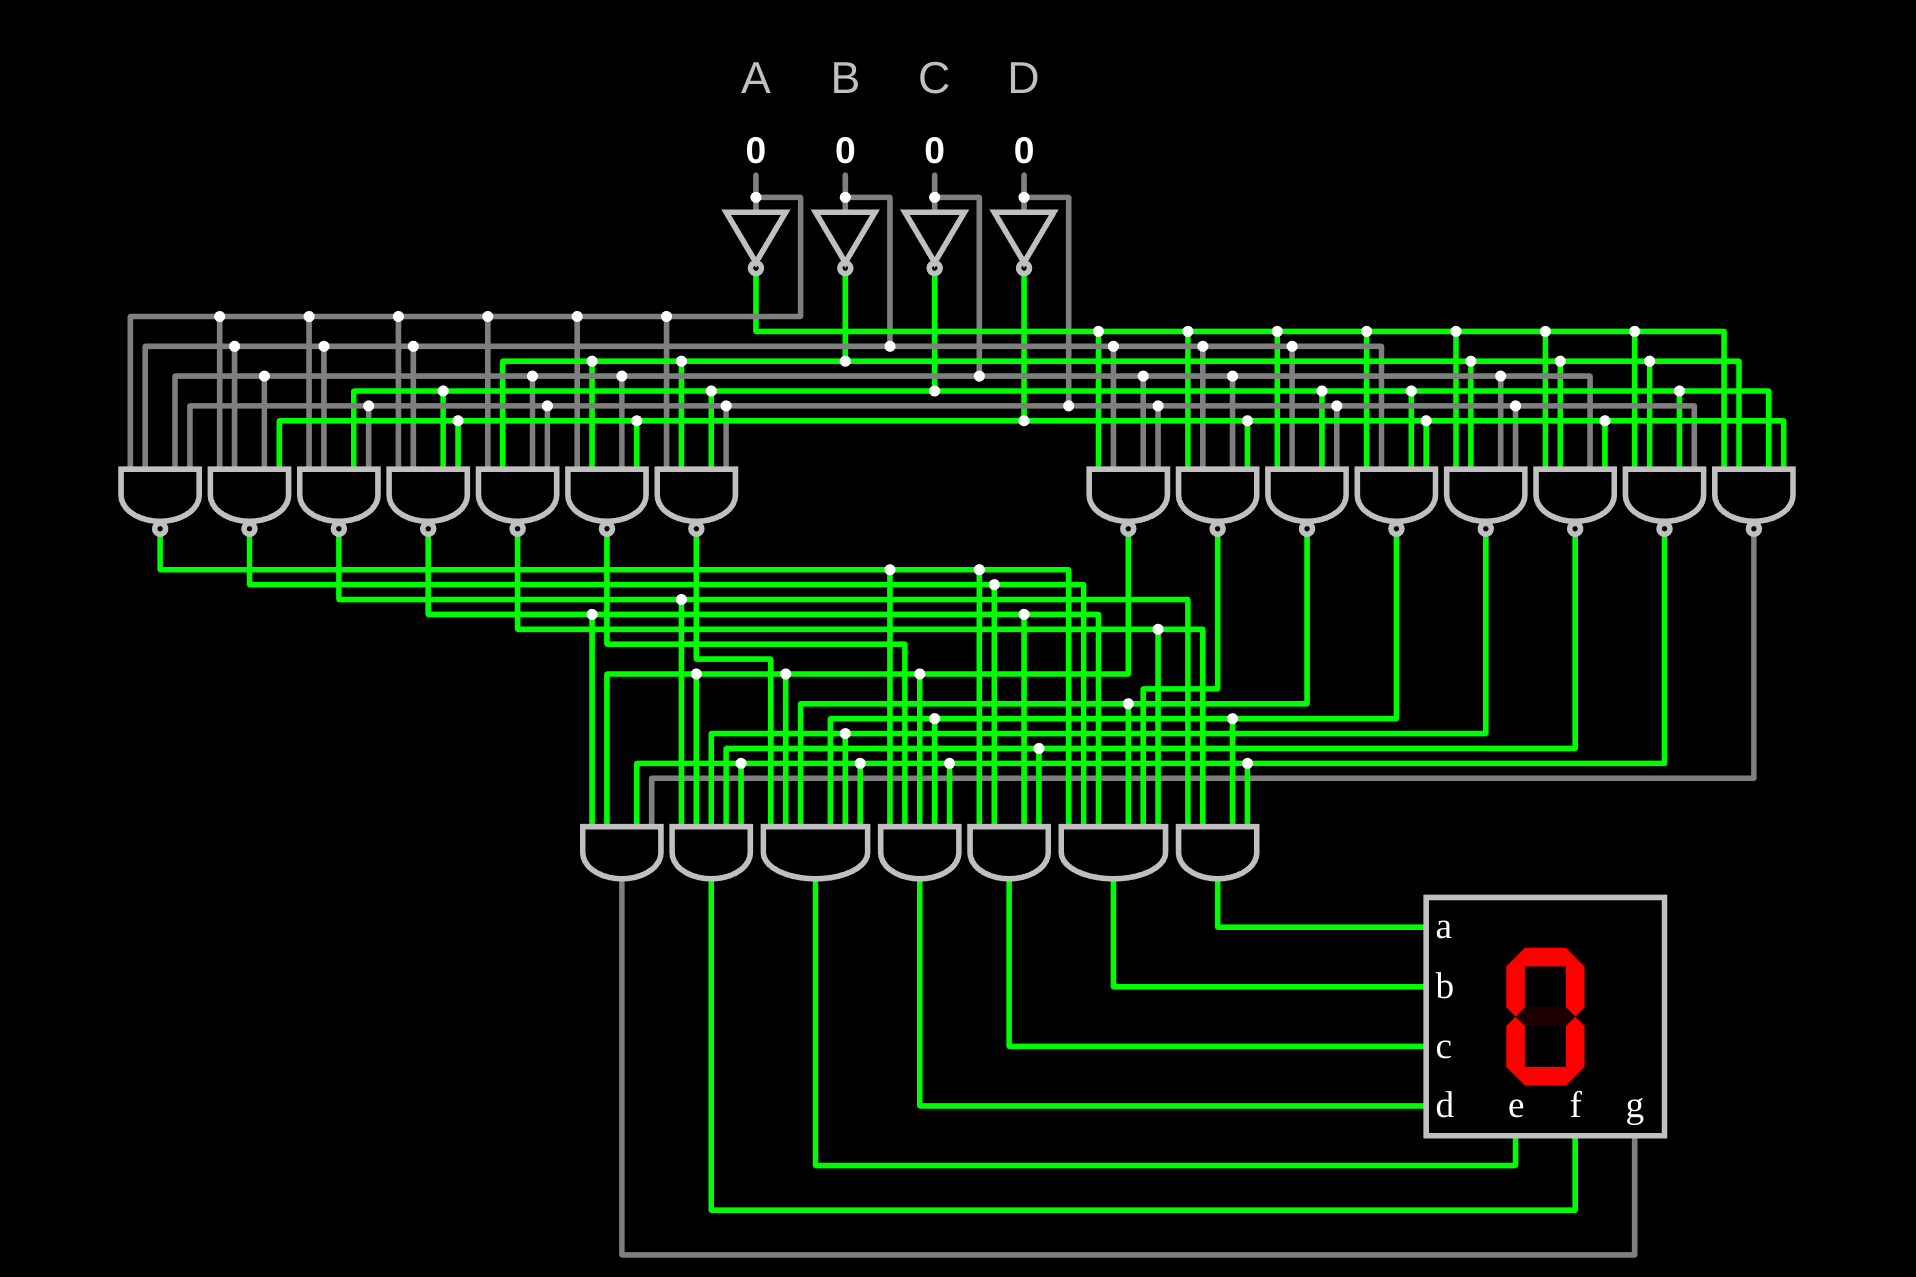 Figure 3: Seven segment decoder, by Mateusz Baran-